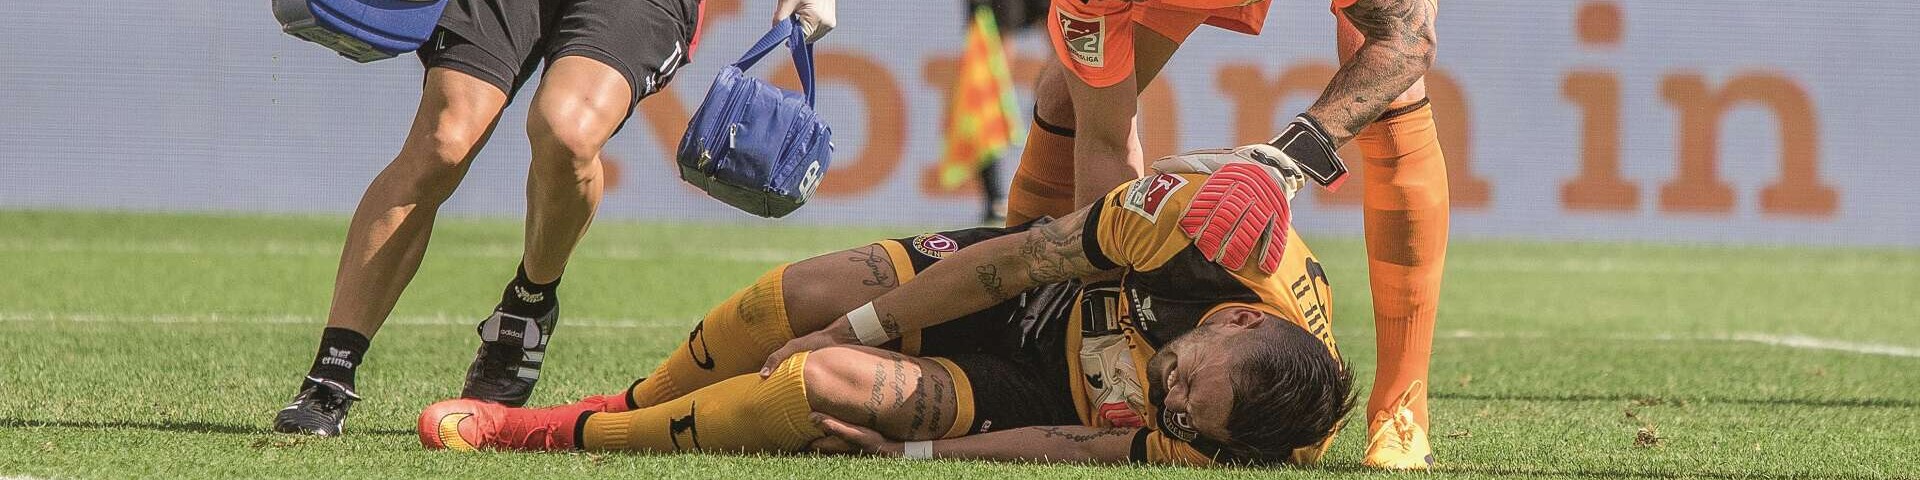 Pascal Testroet von Dynamo Dresden liegt verletzt auf dem Boden, Gegenspieler und medizinischer Betreuer kommen hinzu